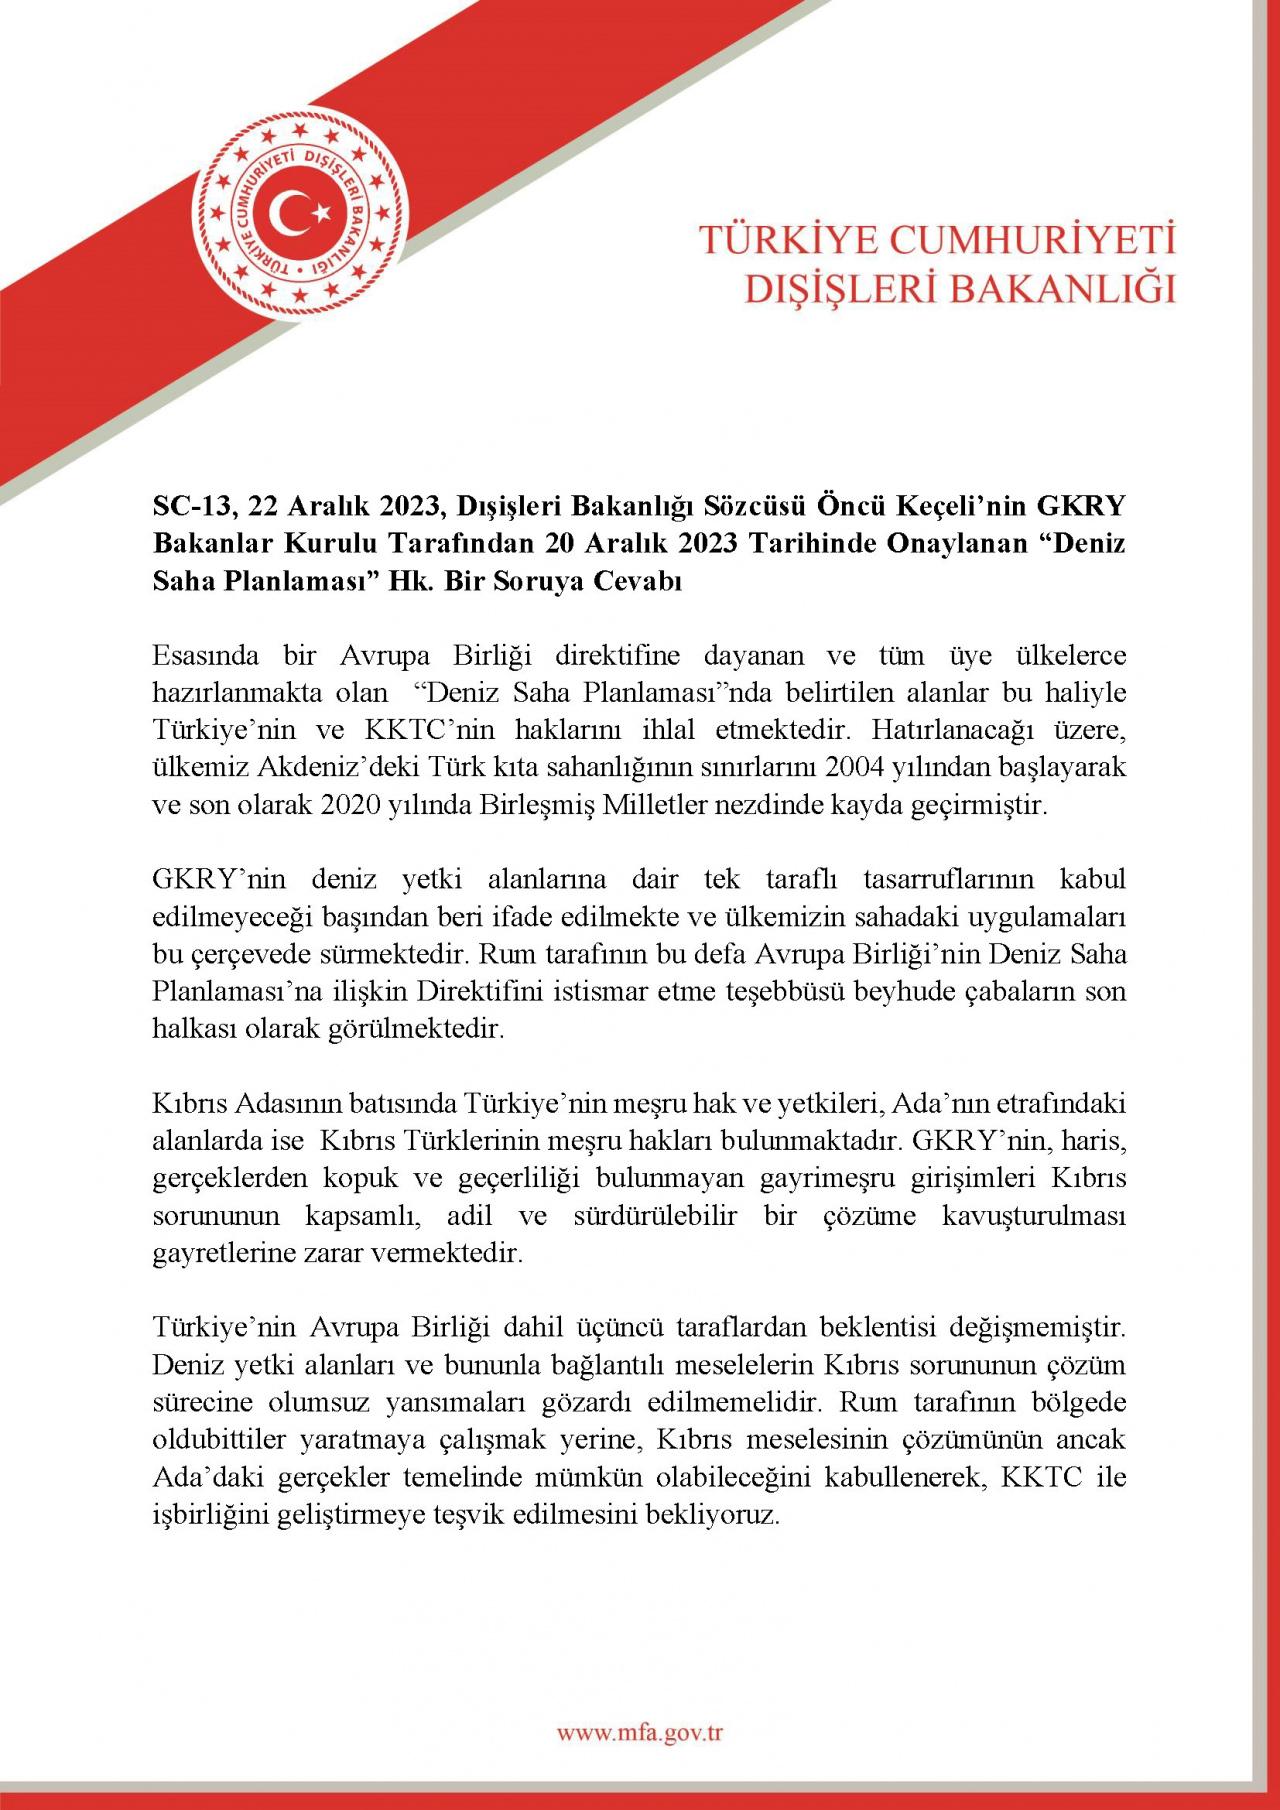 Türkiye'den GKRY açıklaması: Haklarımızı ihlal etmektedir, kabul edilemez!